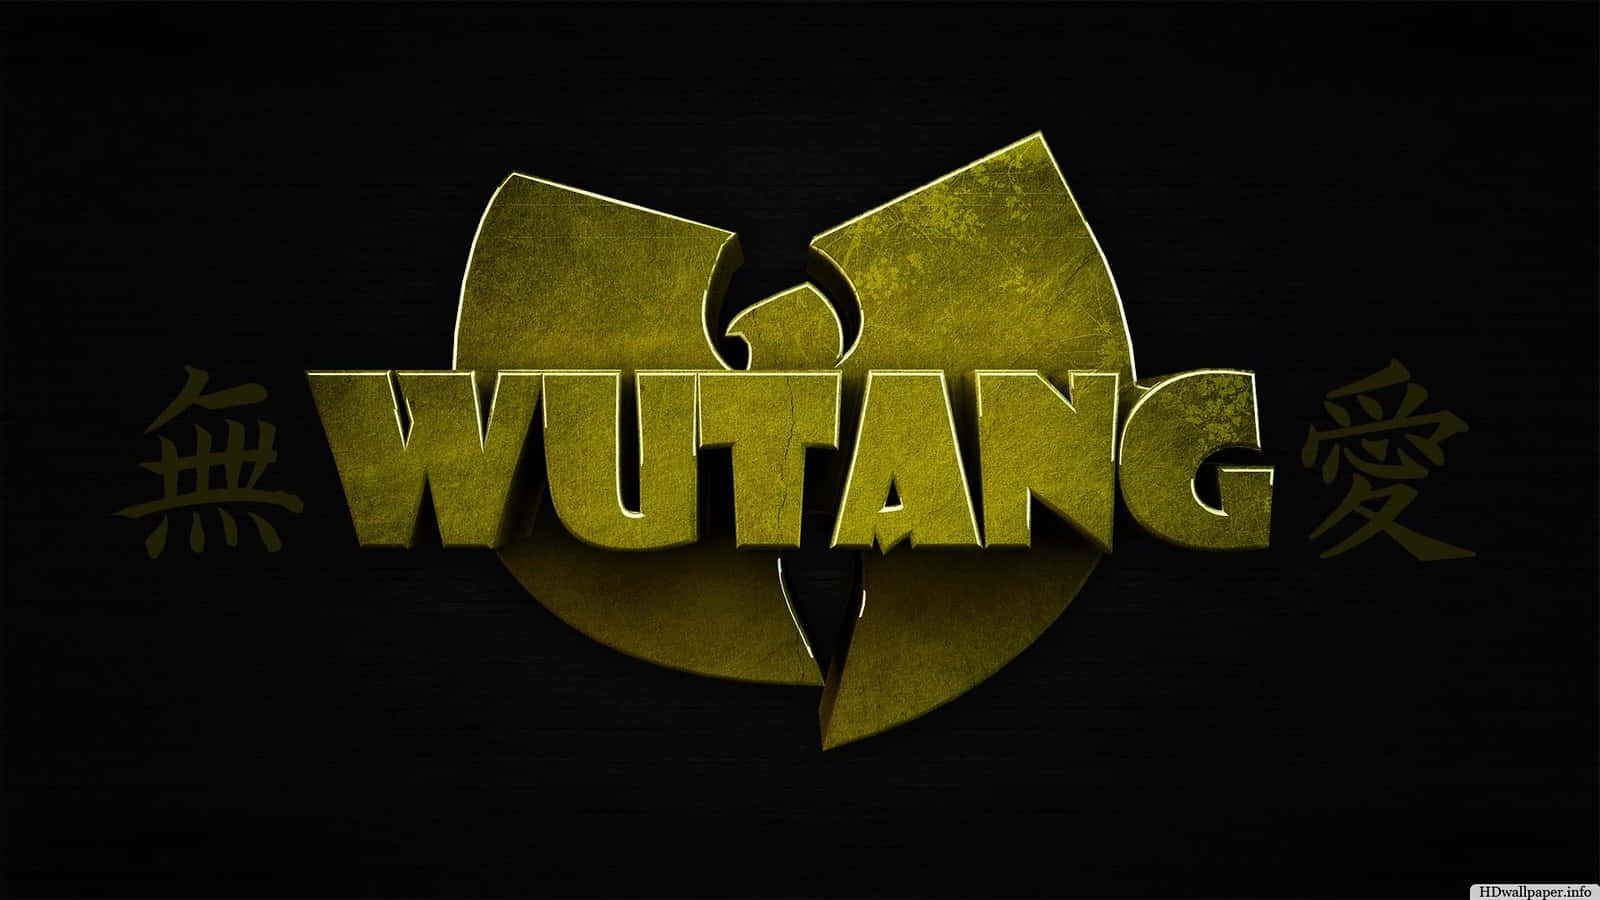 Daswu-tang Clan-logo Wallpaper